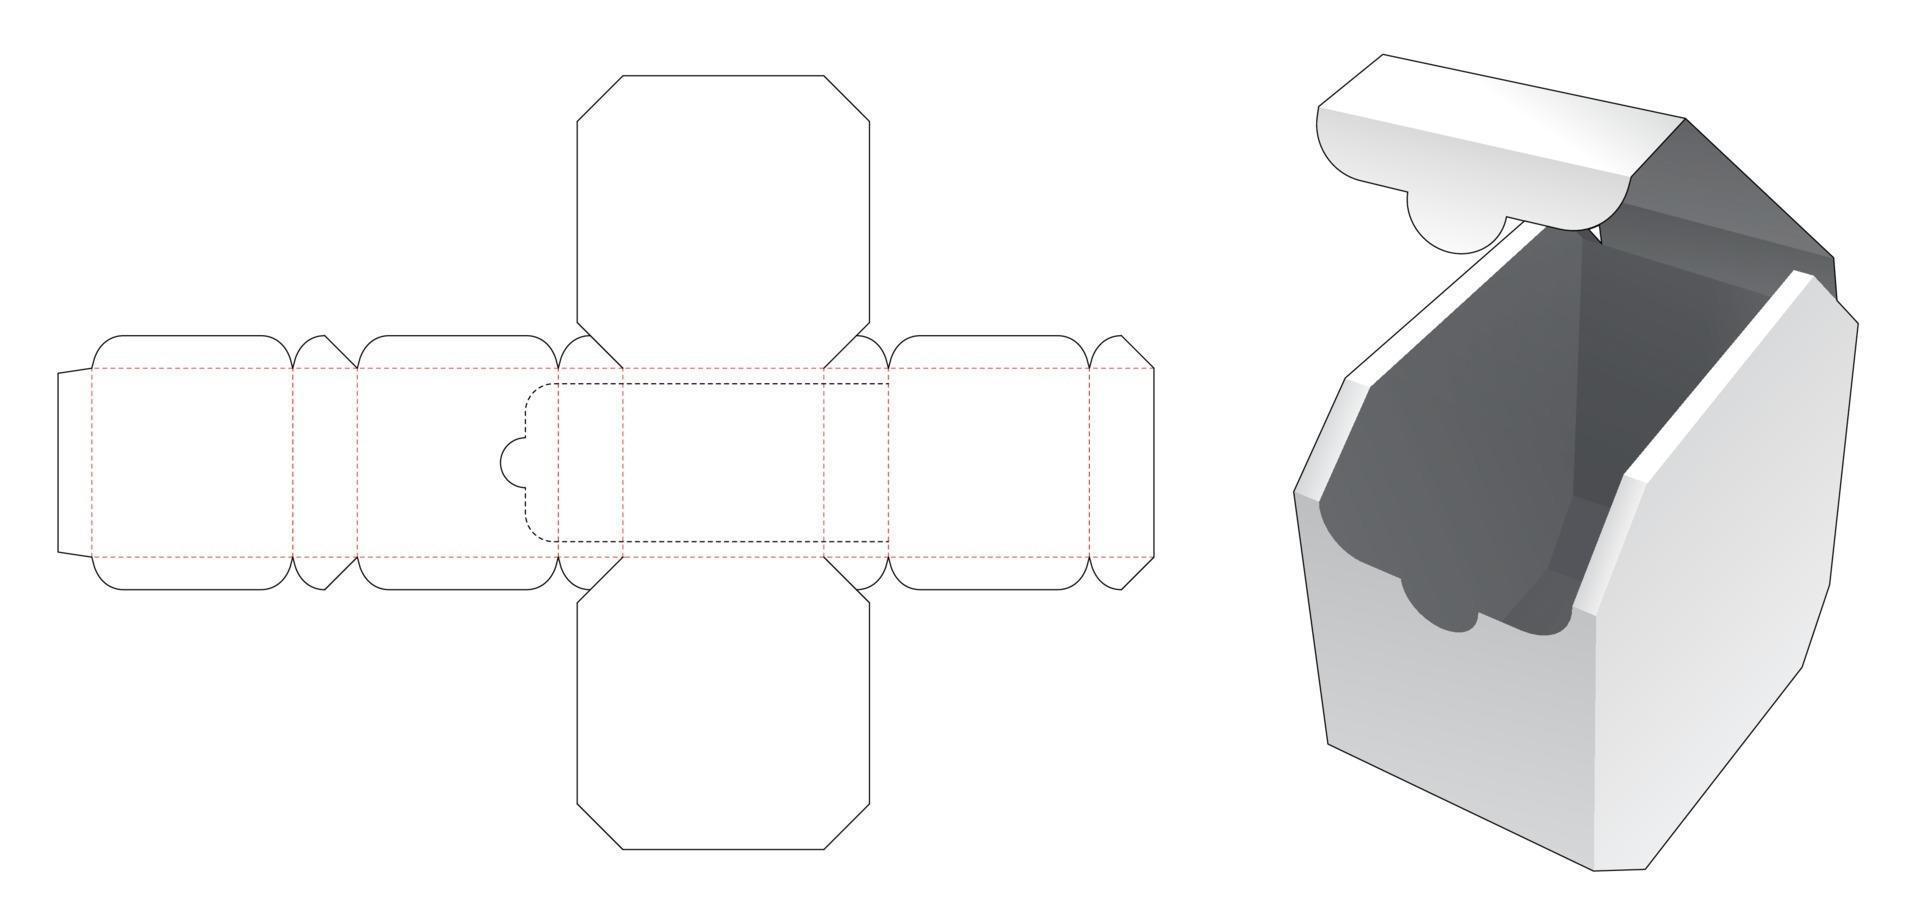 Zipping octagonal box die cut template vector